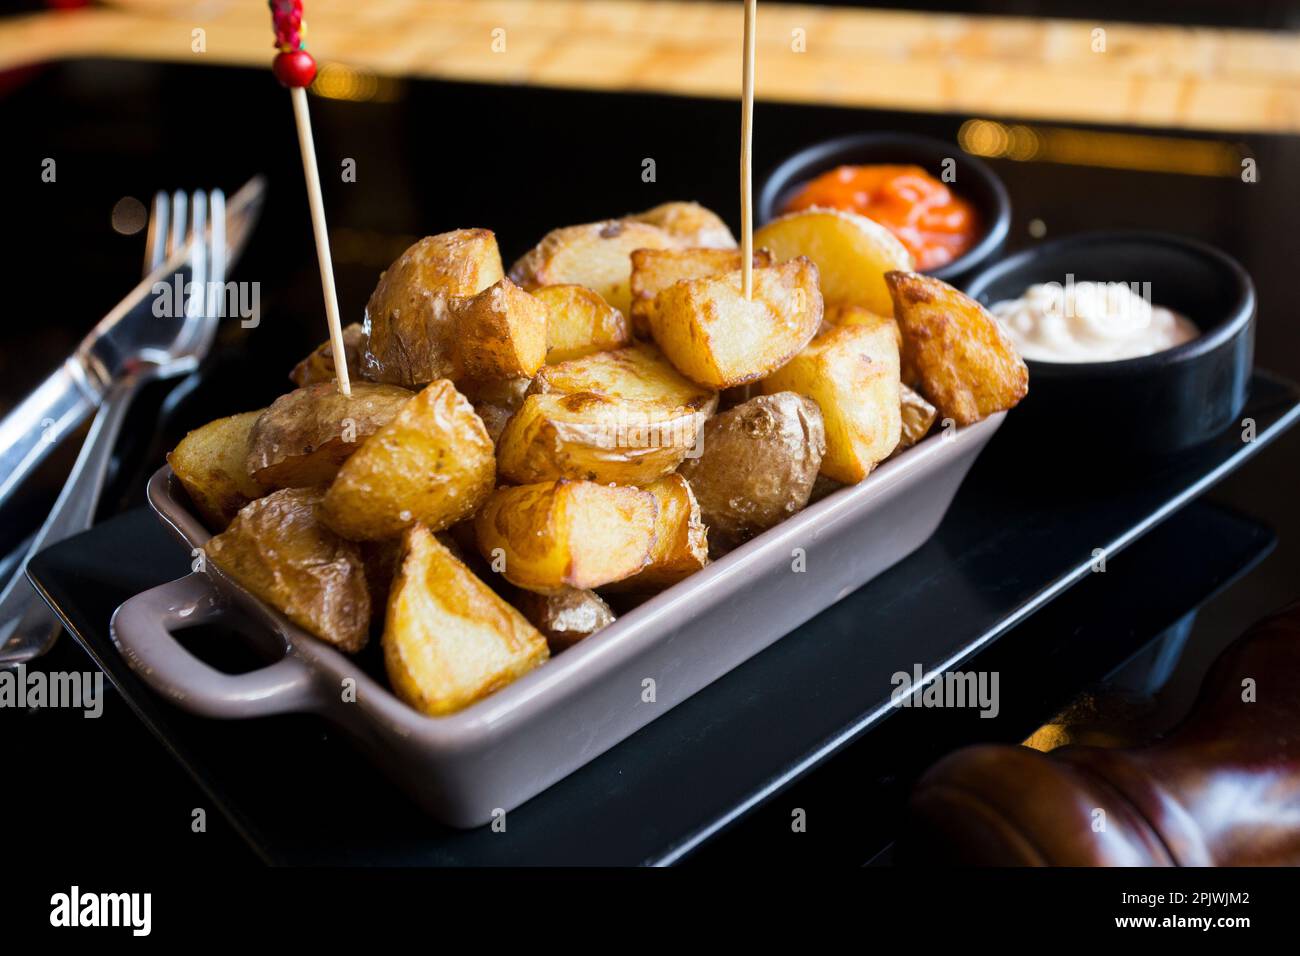 Papas bravas, sont une préparation typique de bars en Espagne, consistant en pommes de terre coupées en gros cubes, frits dans l'huile d'olive et assaisonnés avec de la salsa brava Banque D'Images